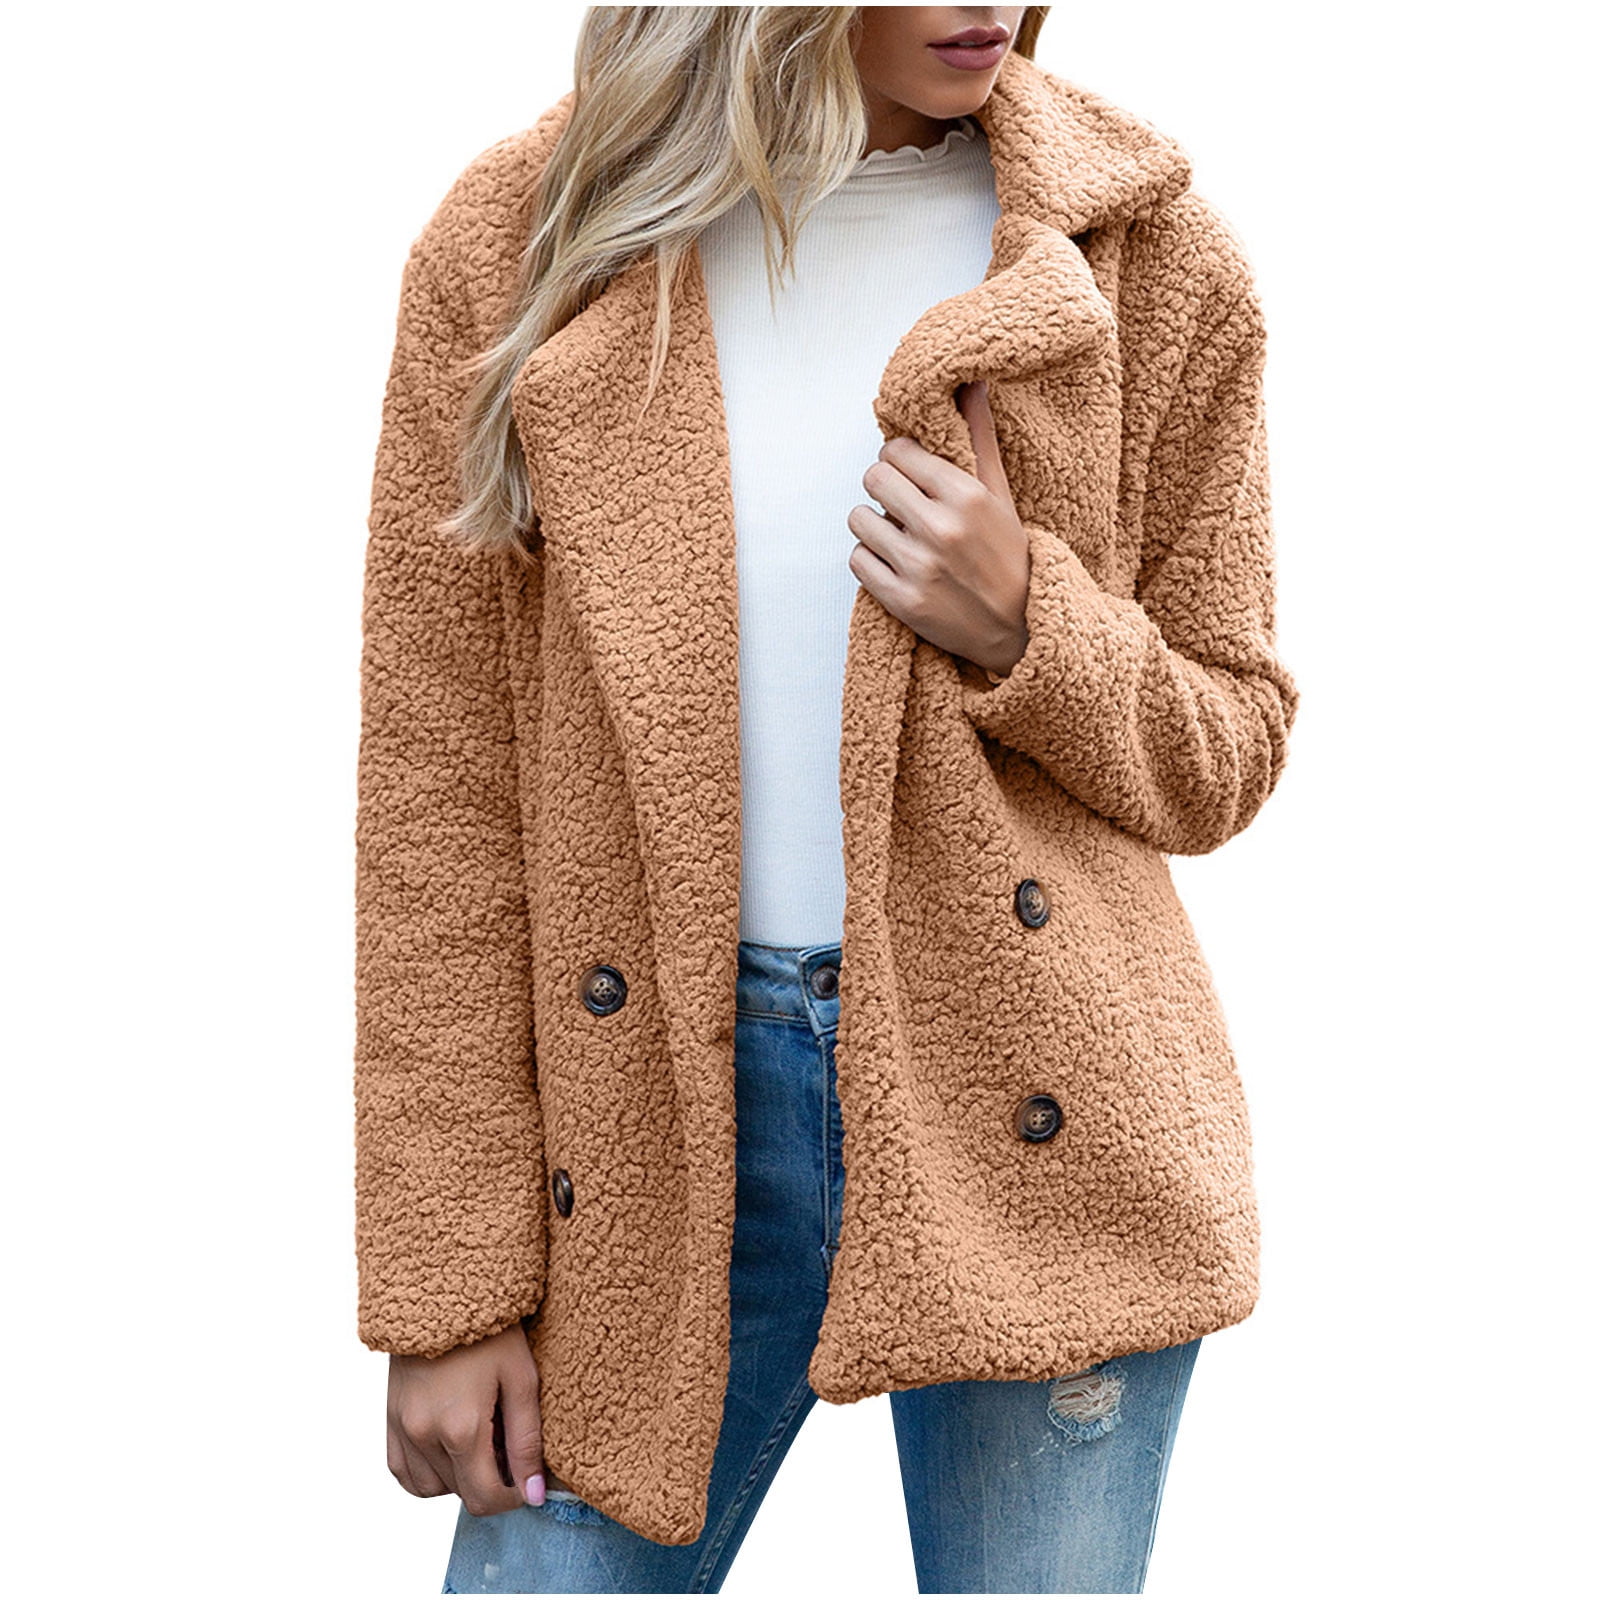 Hfyihgf Women's Full Zip Fleece Jacket Long Sleeve Lapel Warm Winter  Outwear Faux Suede Splicing Sherpa Coat with Zipper Pocket(Beige,XL) 